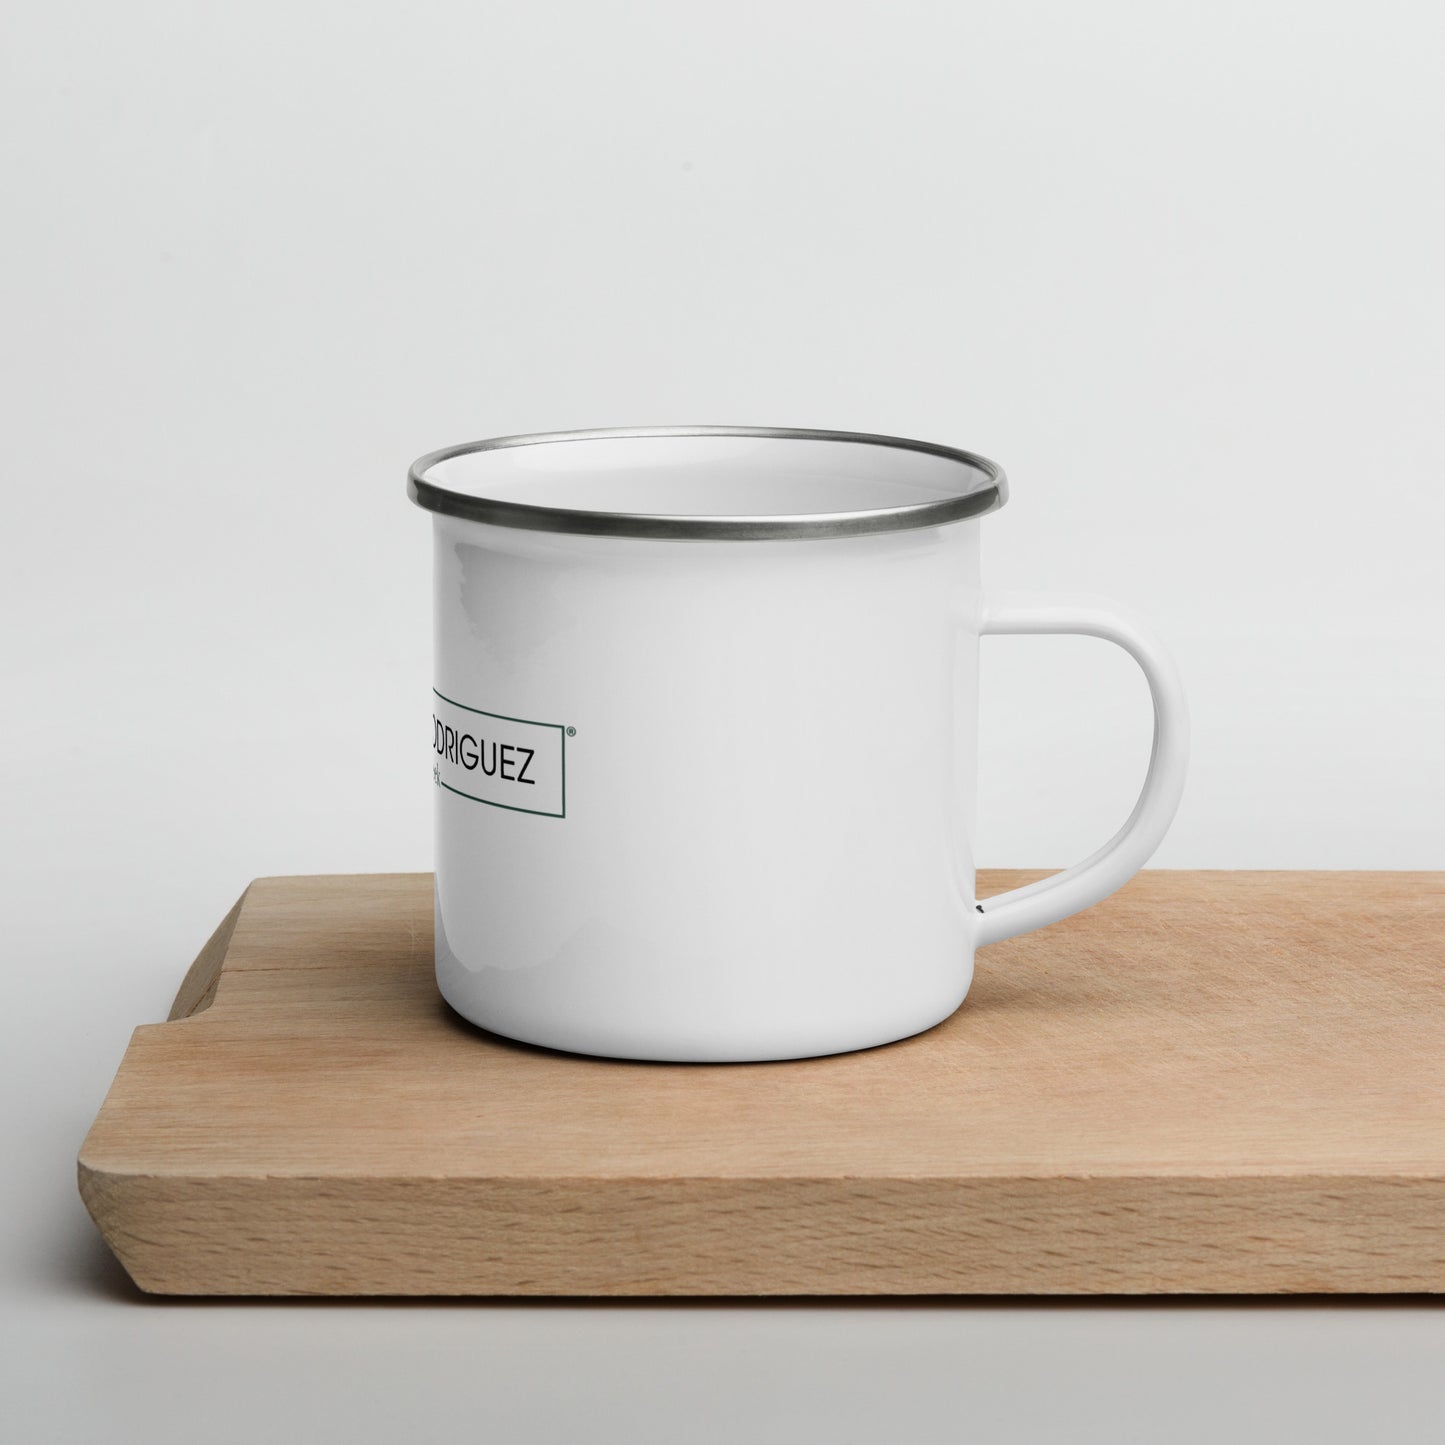 Enamel Coffee Mug